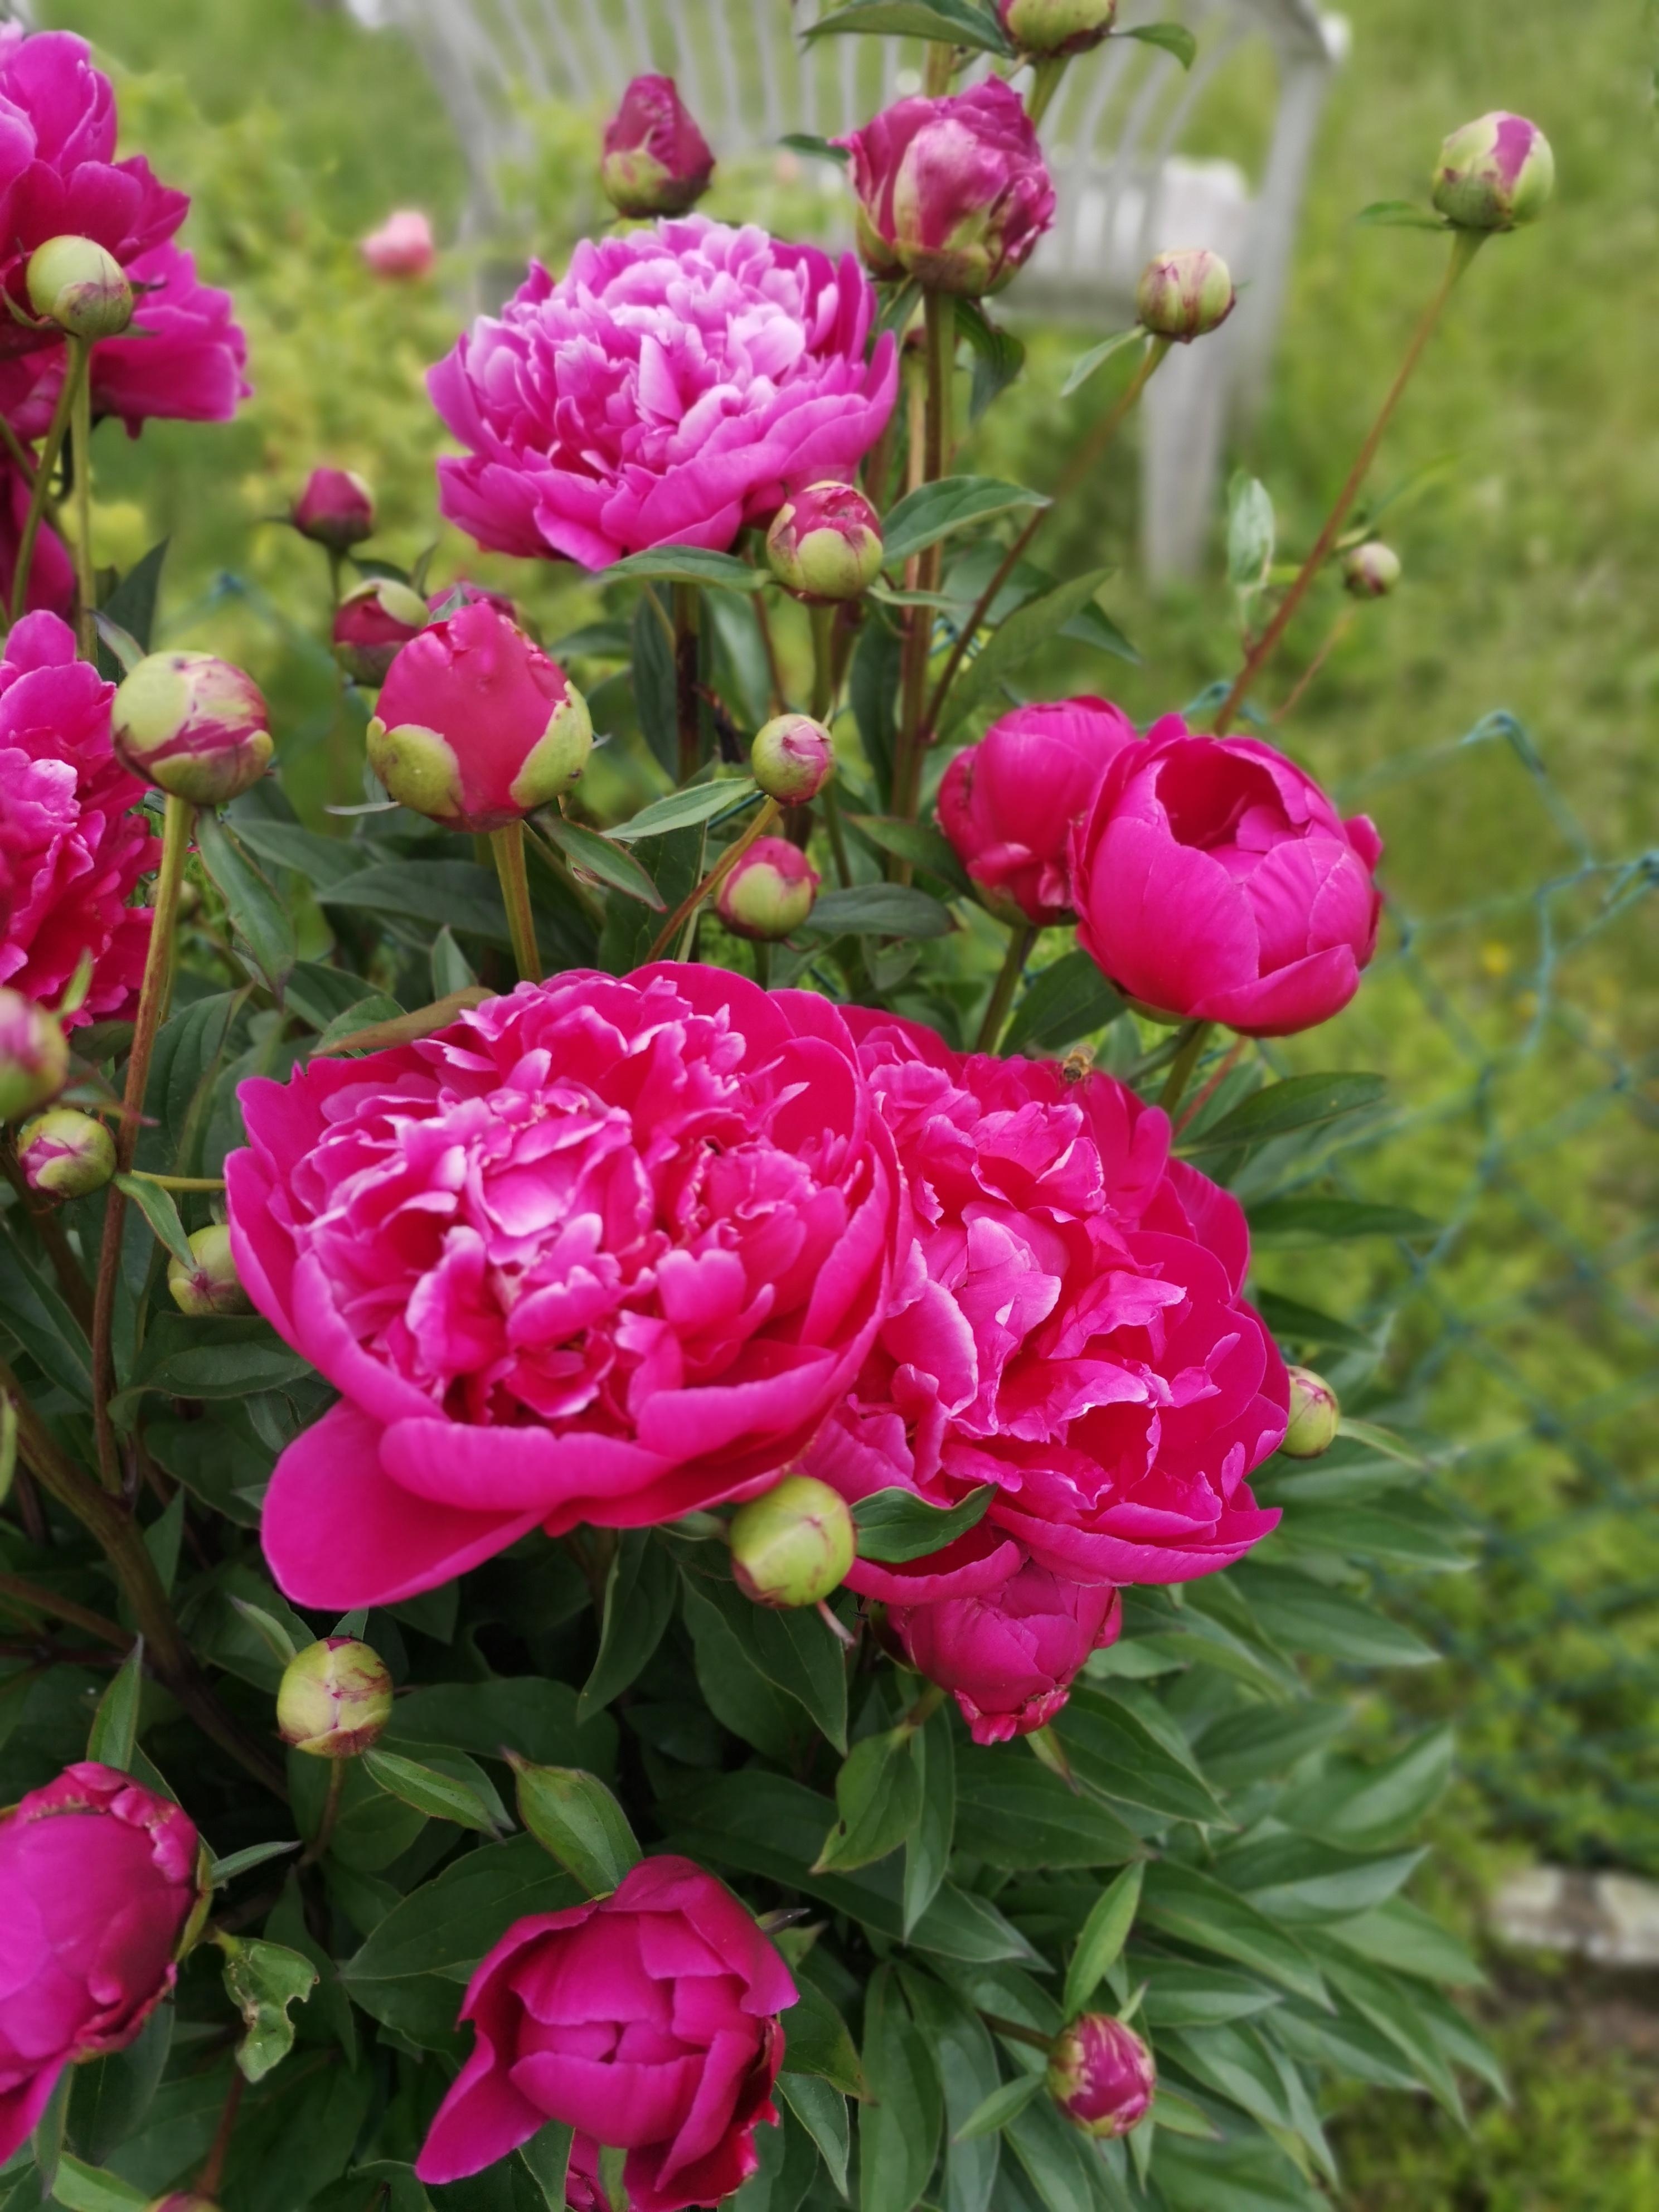 Stolz.. Auch wenn diese Blumen aus dem Garten meiner Tante sind😜
#gartenblumen #pink 